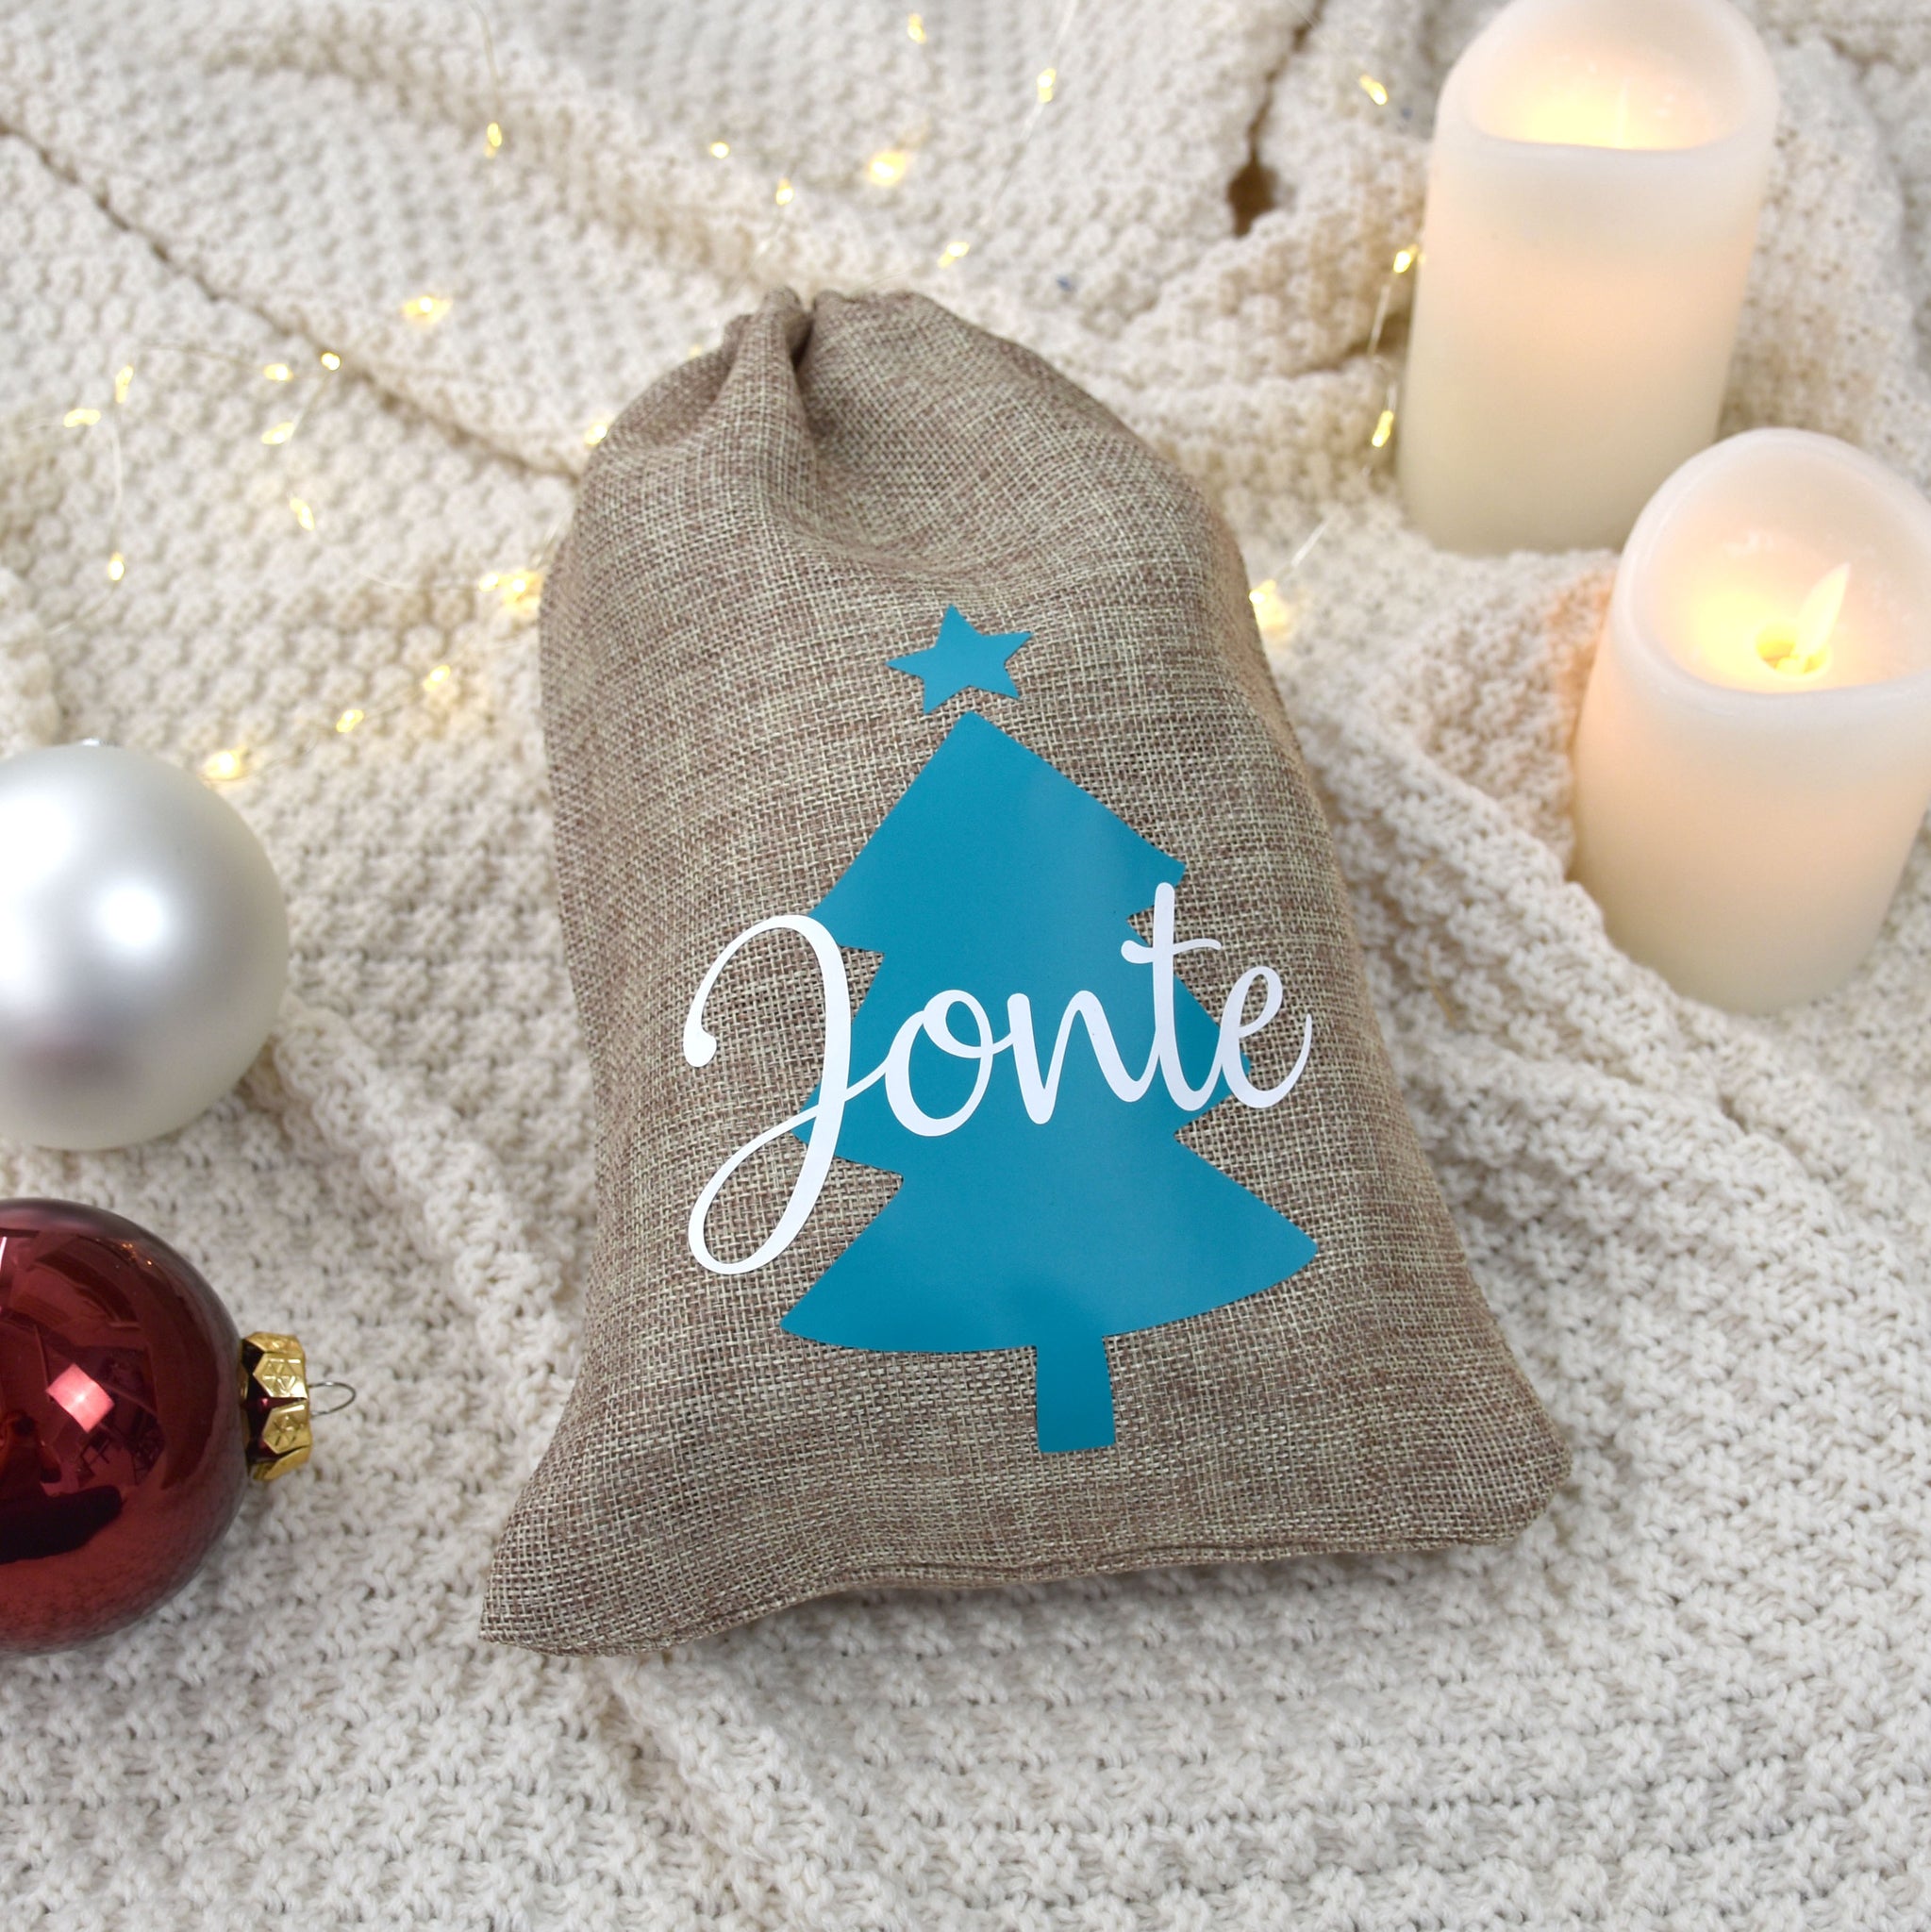 Geschenkbeutel Weihnachten im Jute-Look | Tannenbaum und Namen - BeBonnie